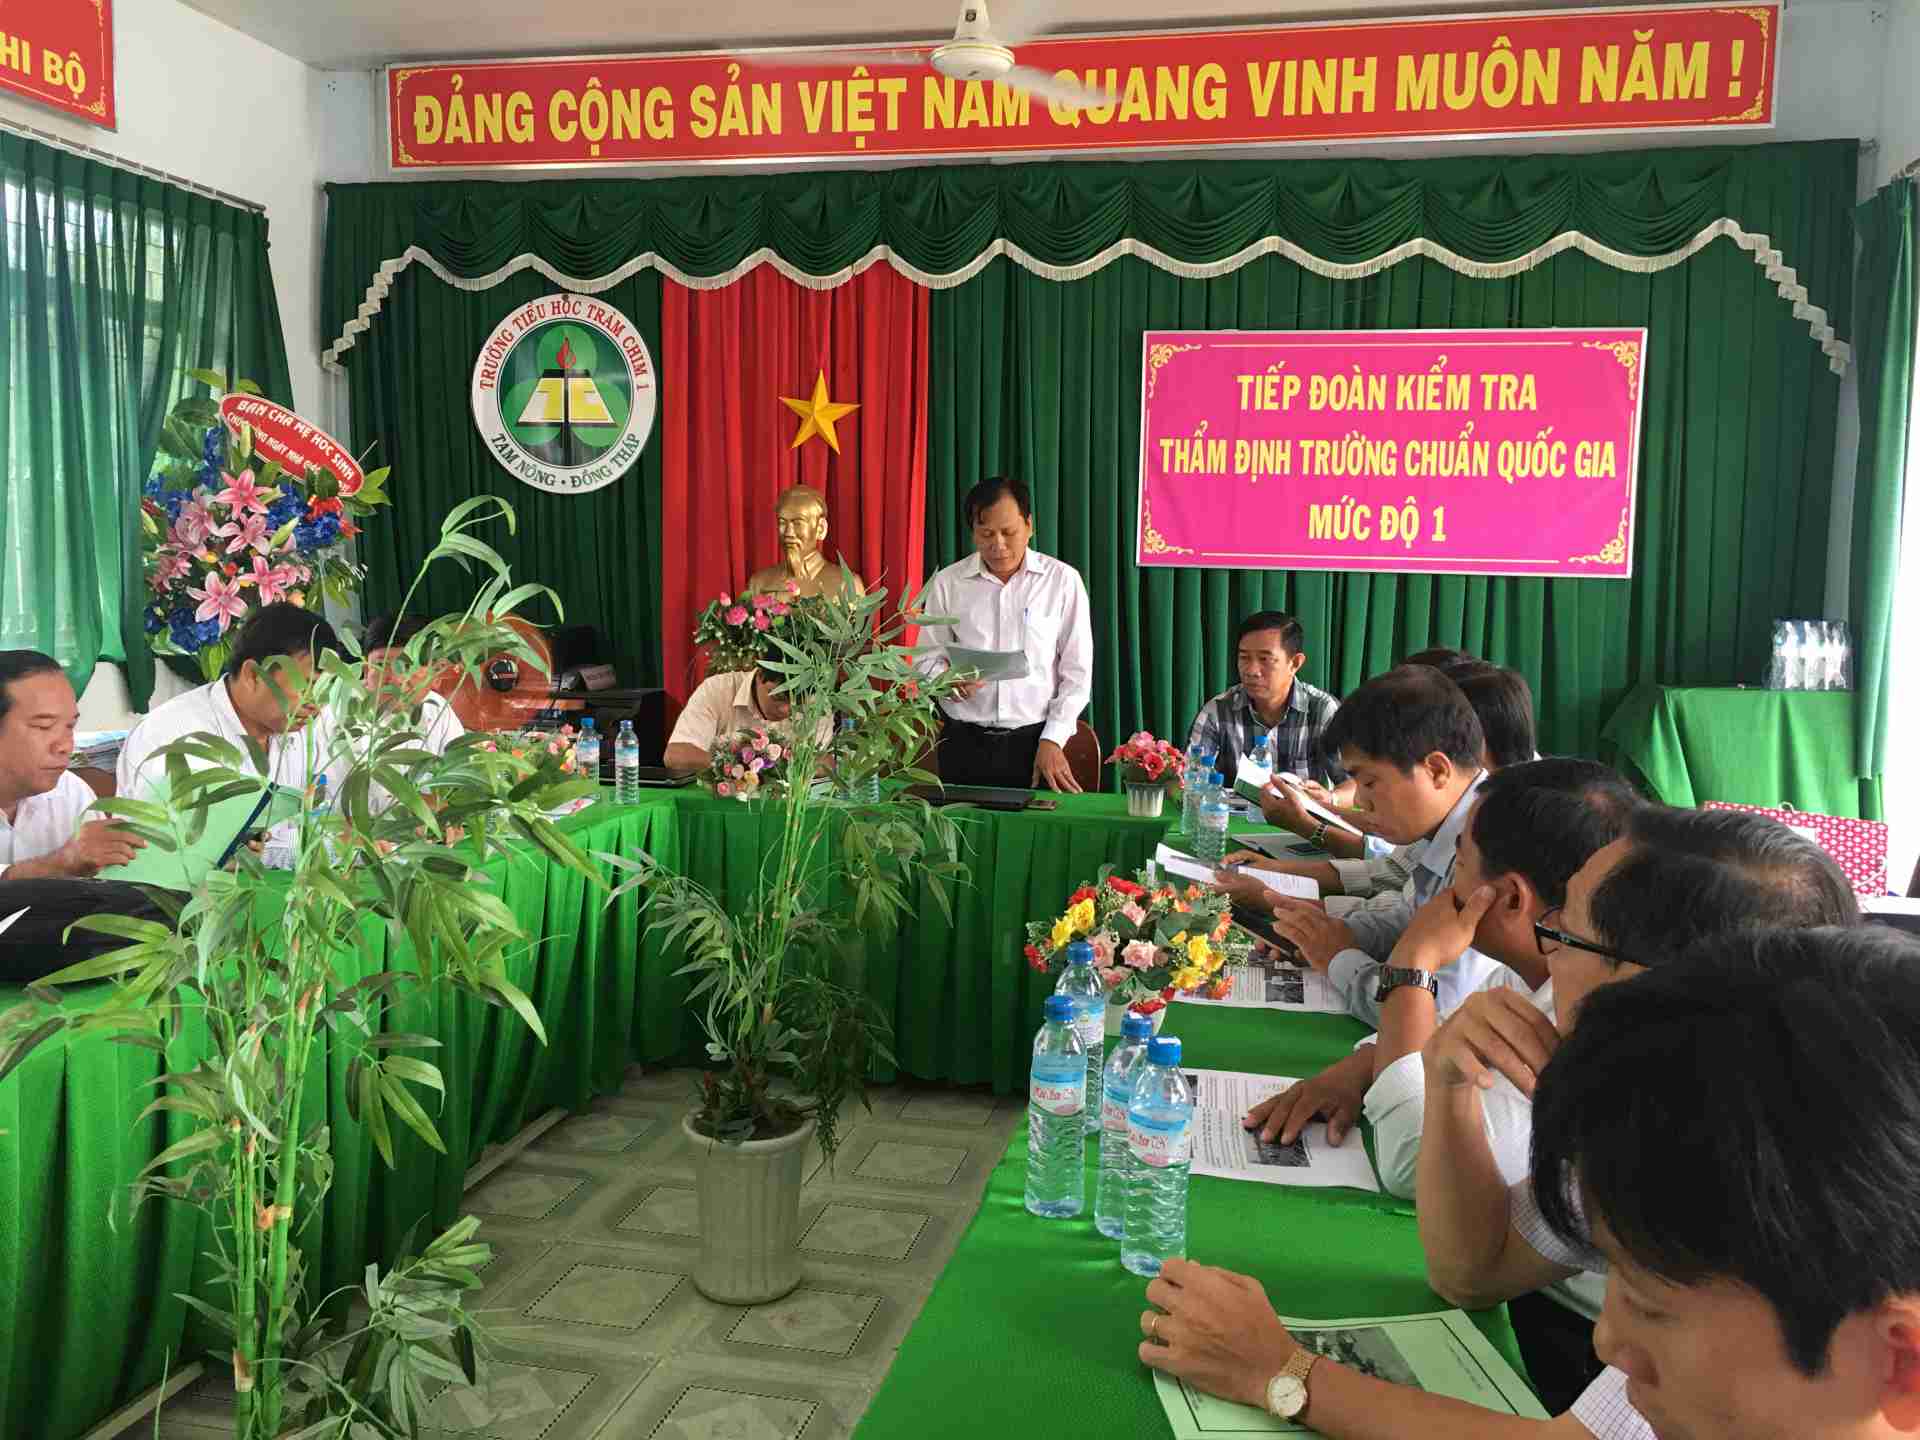 2.Ông Nguyễn Văn Kết - Phó Trưởng đoàn phát biểu